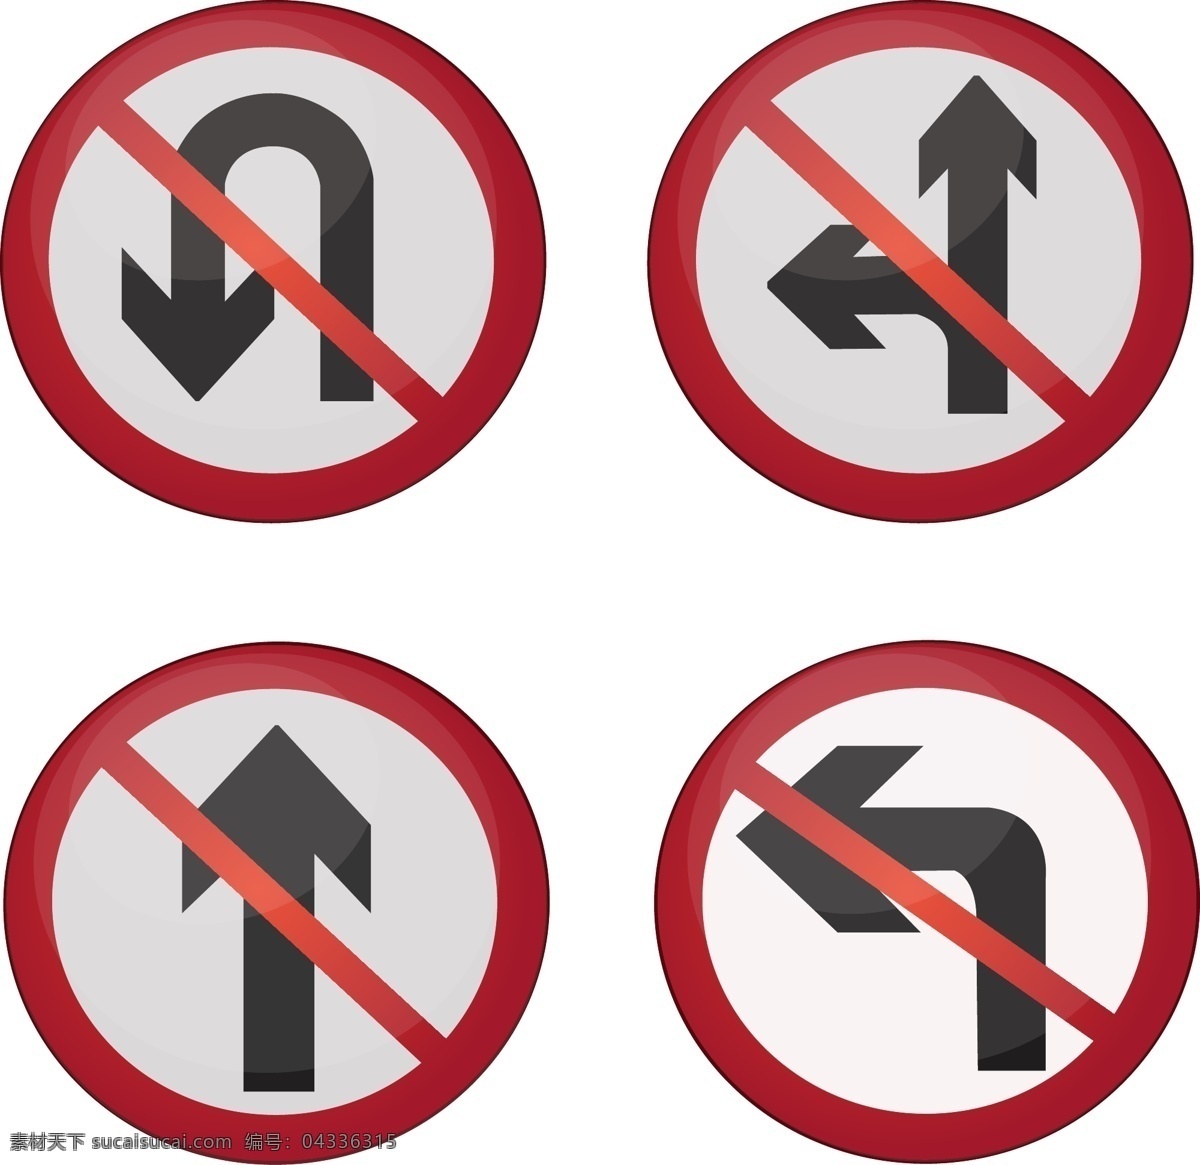 交通 箭头 图标 插画 转弯箭头 之星箭头 左拐箭头 禁止图标 交通箭头图标 交通规则 路标